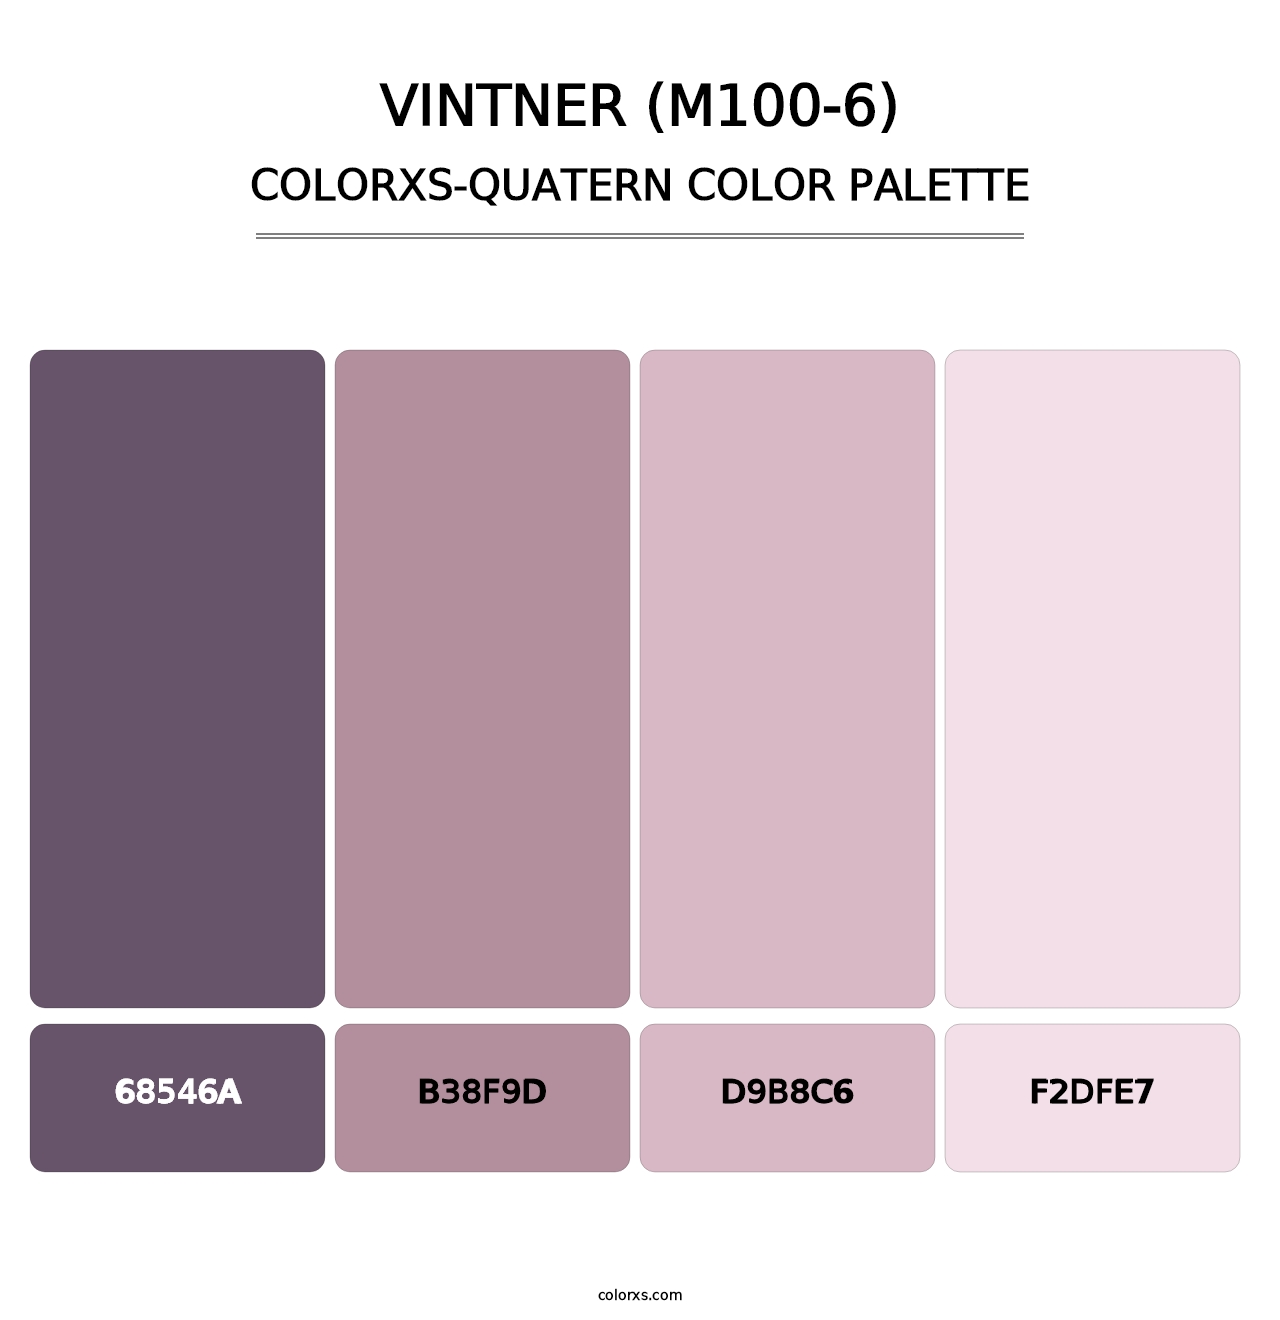 Vintner (M100-6) - Colorxs Quatern Palette